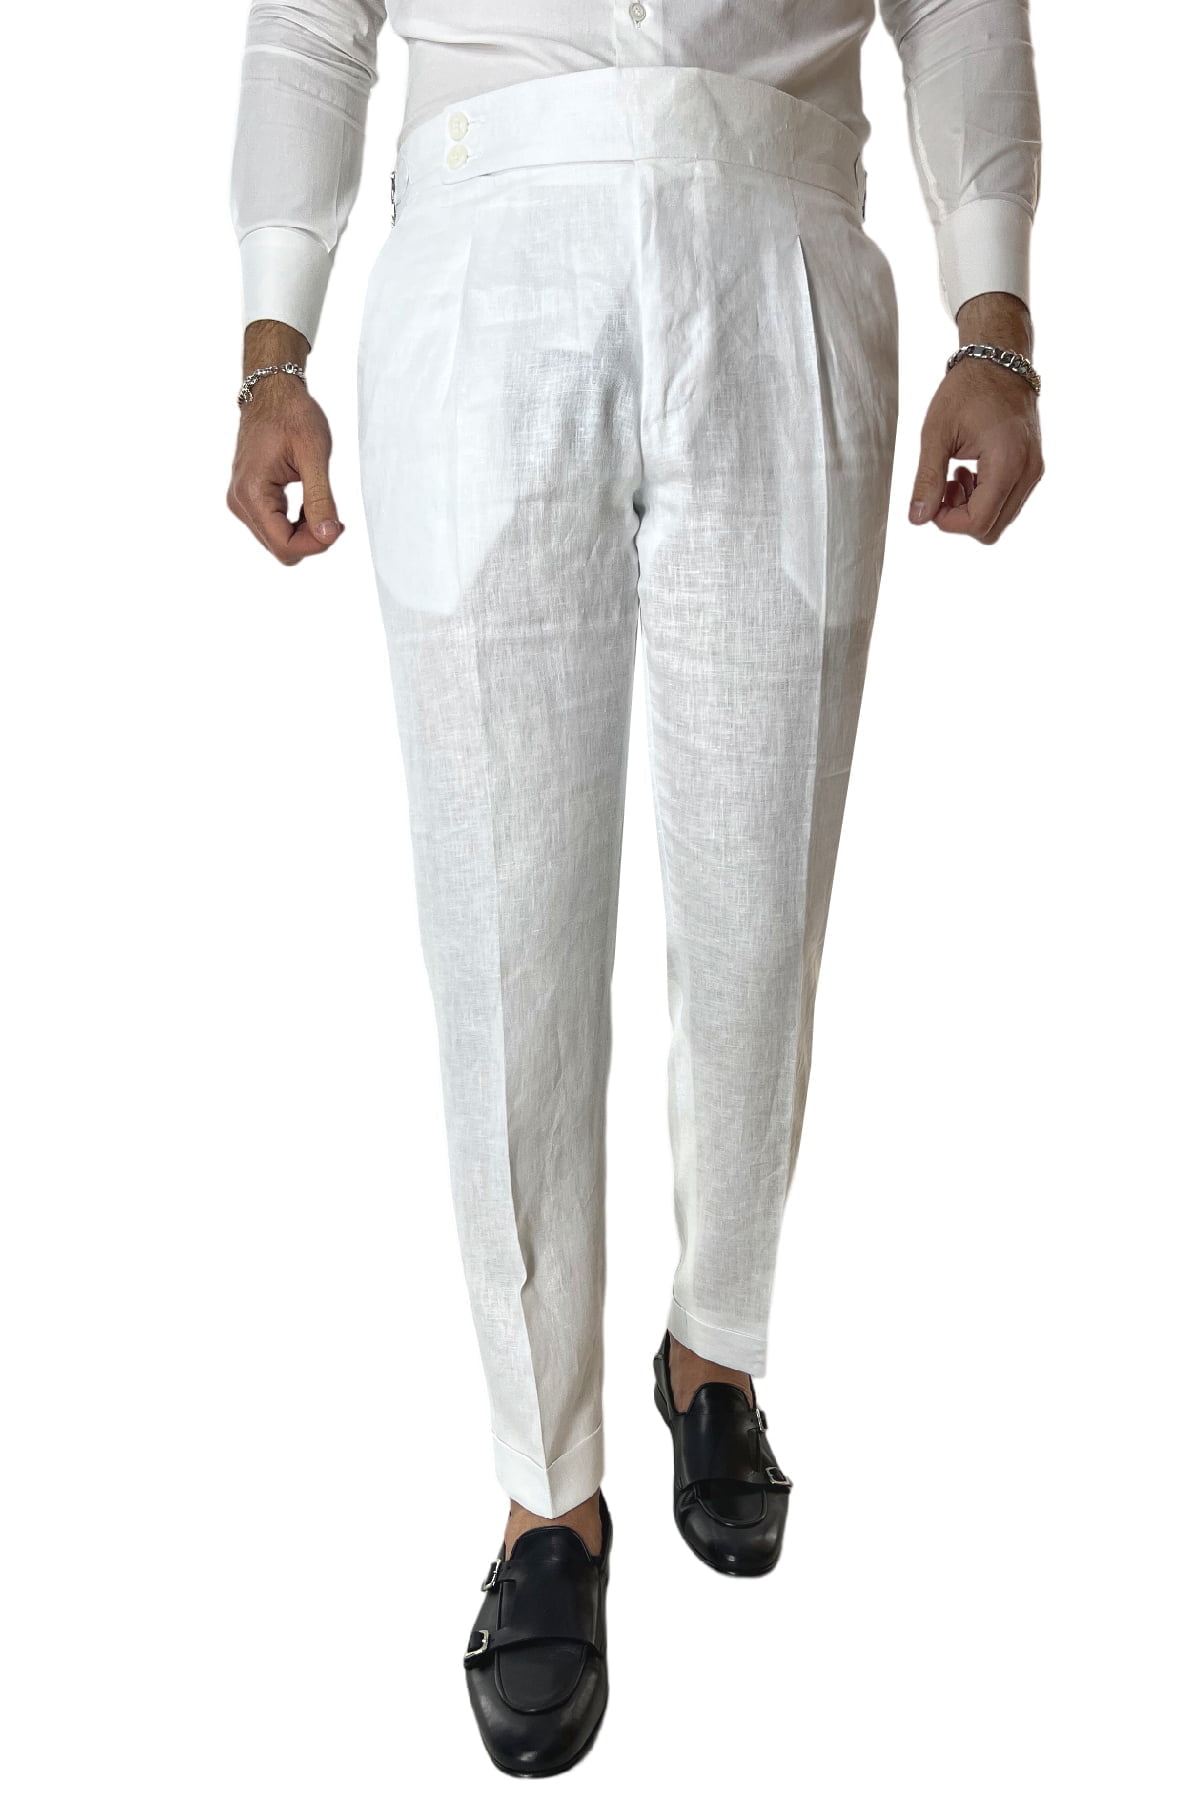 Pantalone uomo bianco in lino 100% vita alta con pinces fibbie laterali e risvolto 4cm